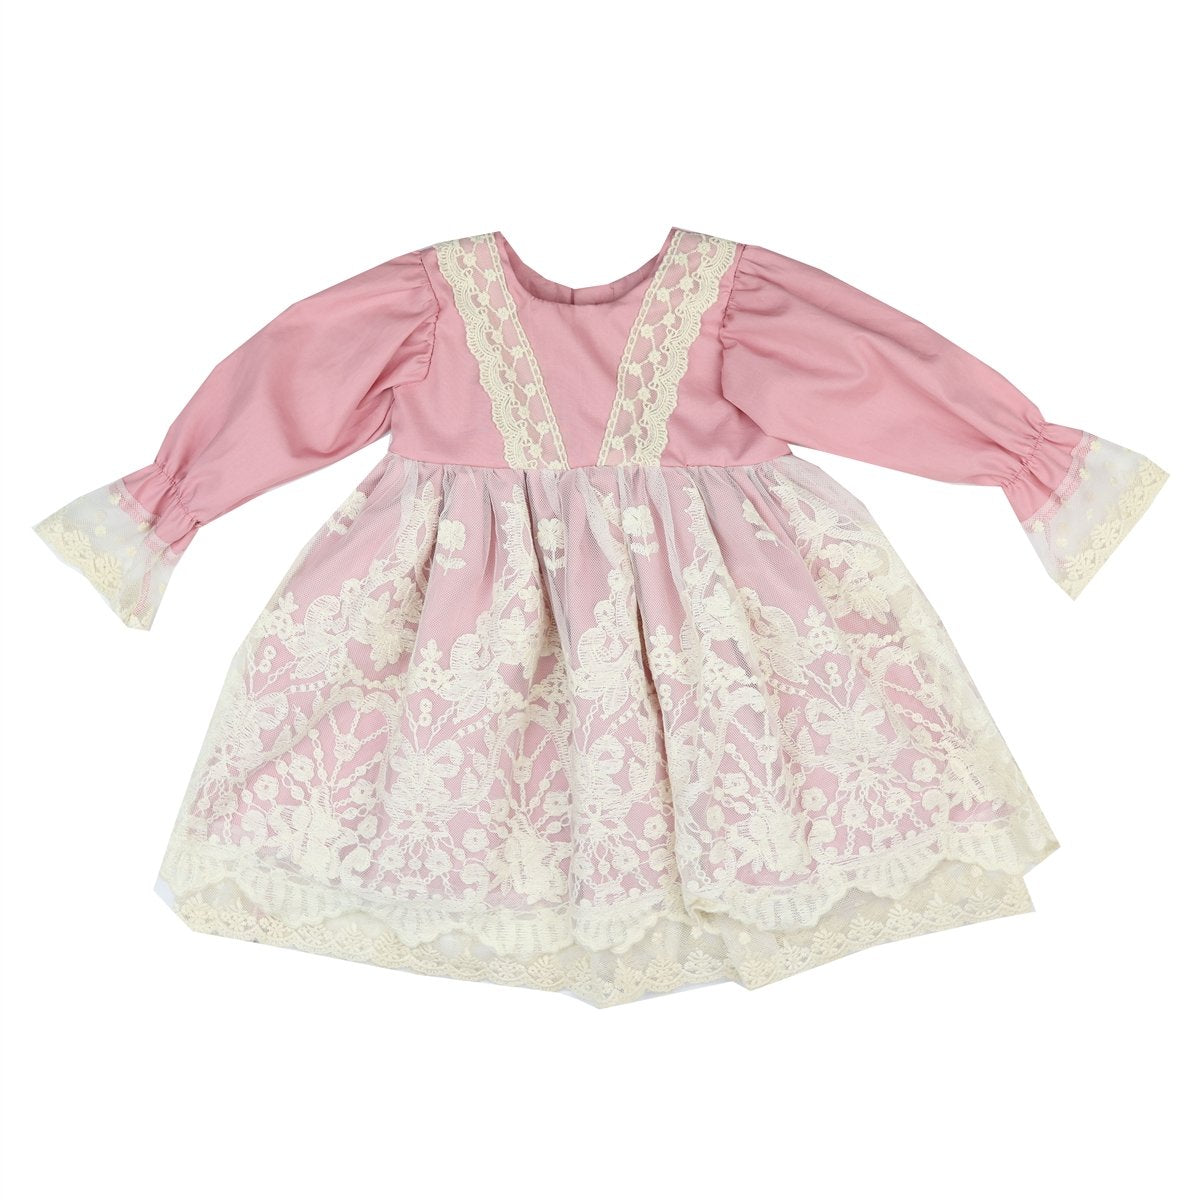 Haute Baby Rose Infant Toddler Girls Dress